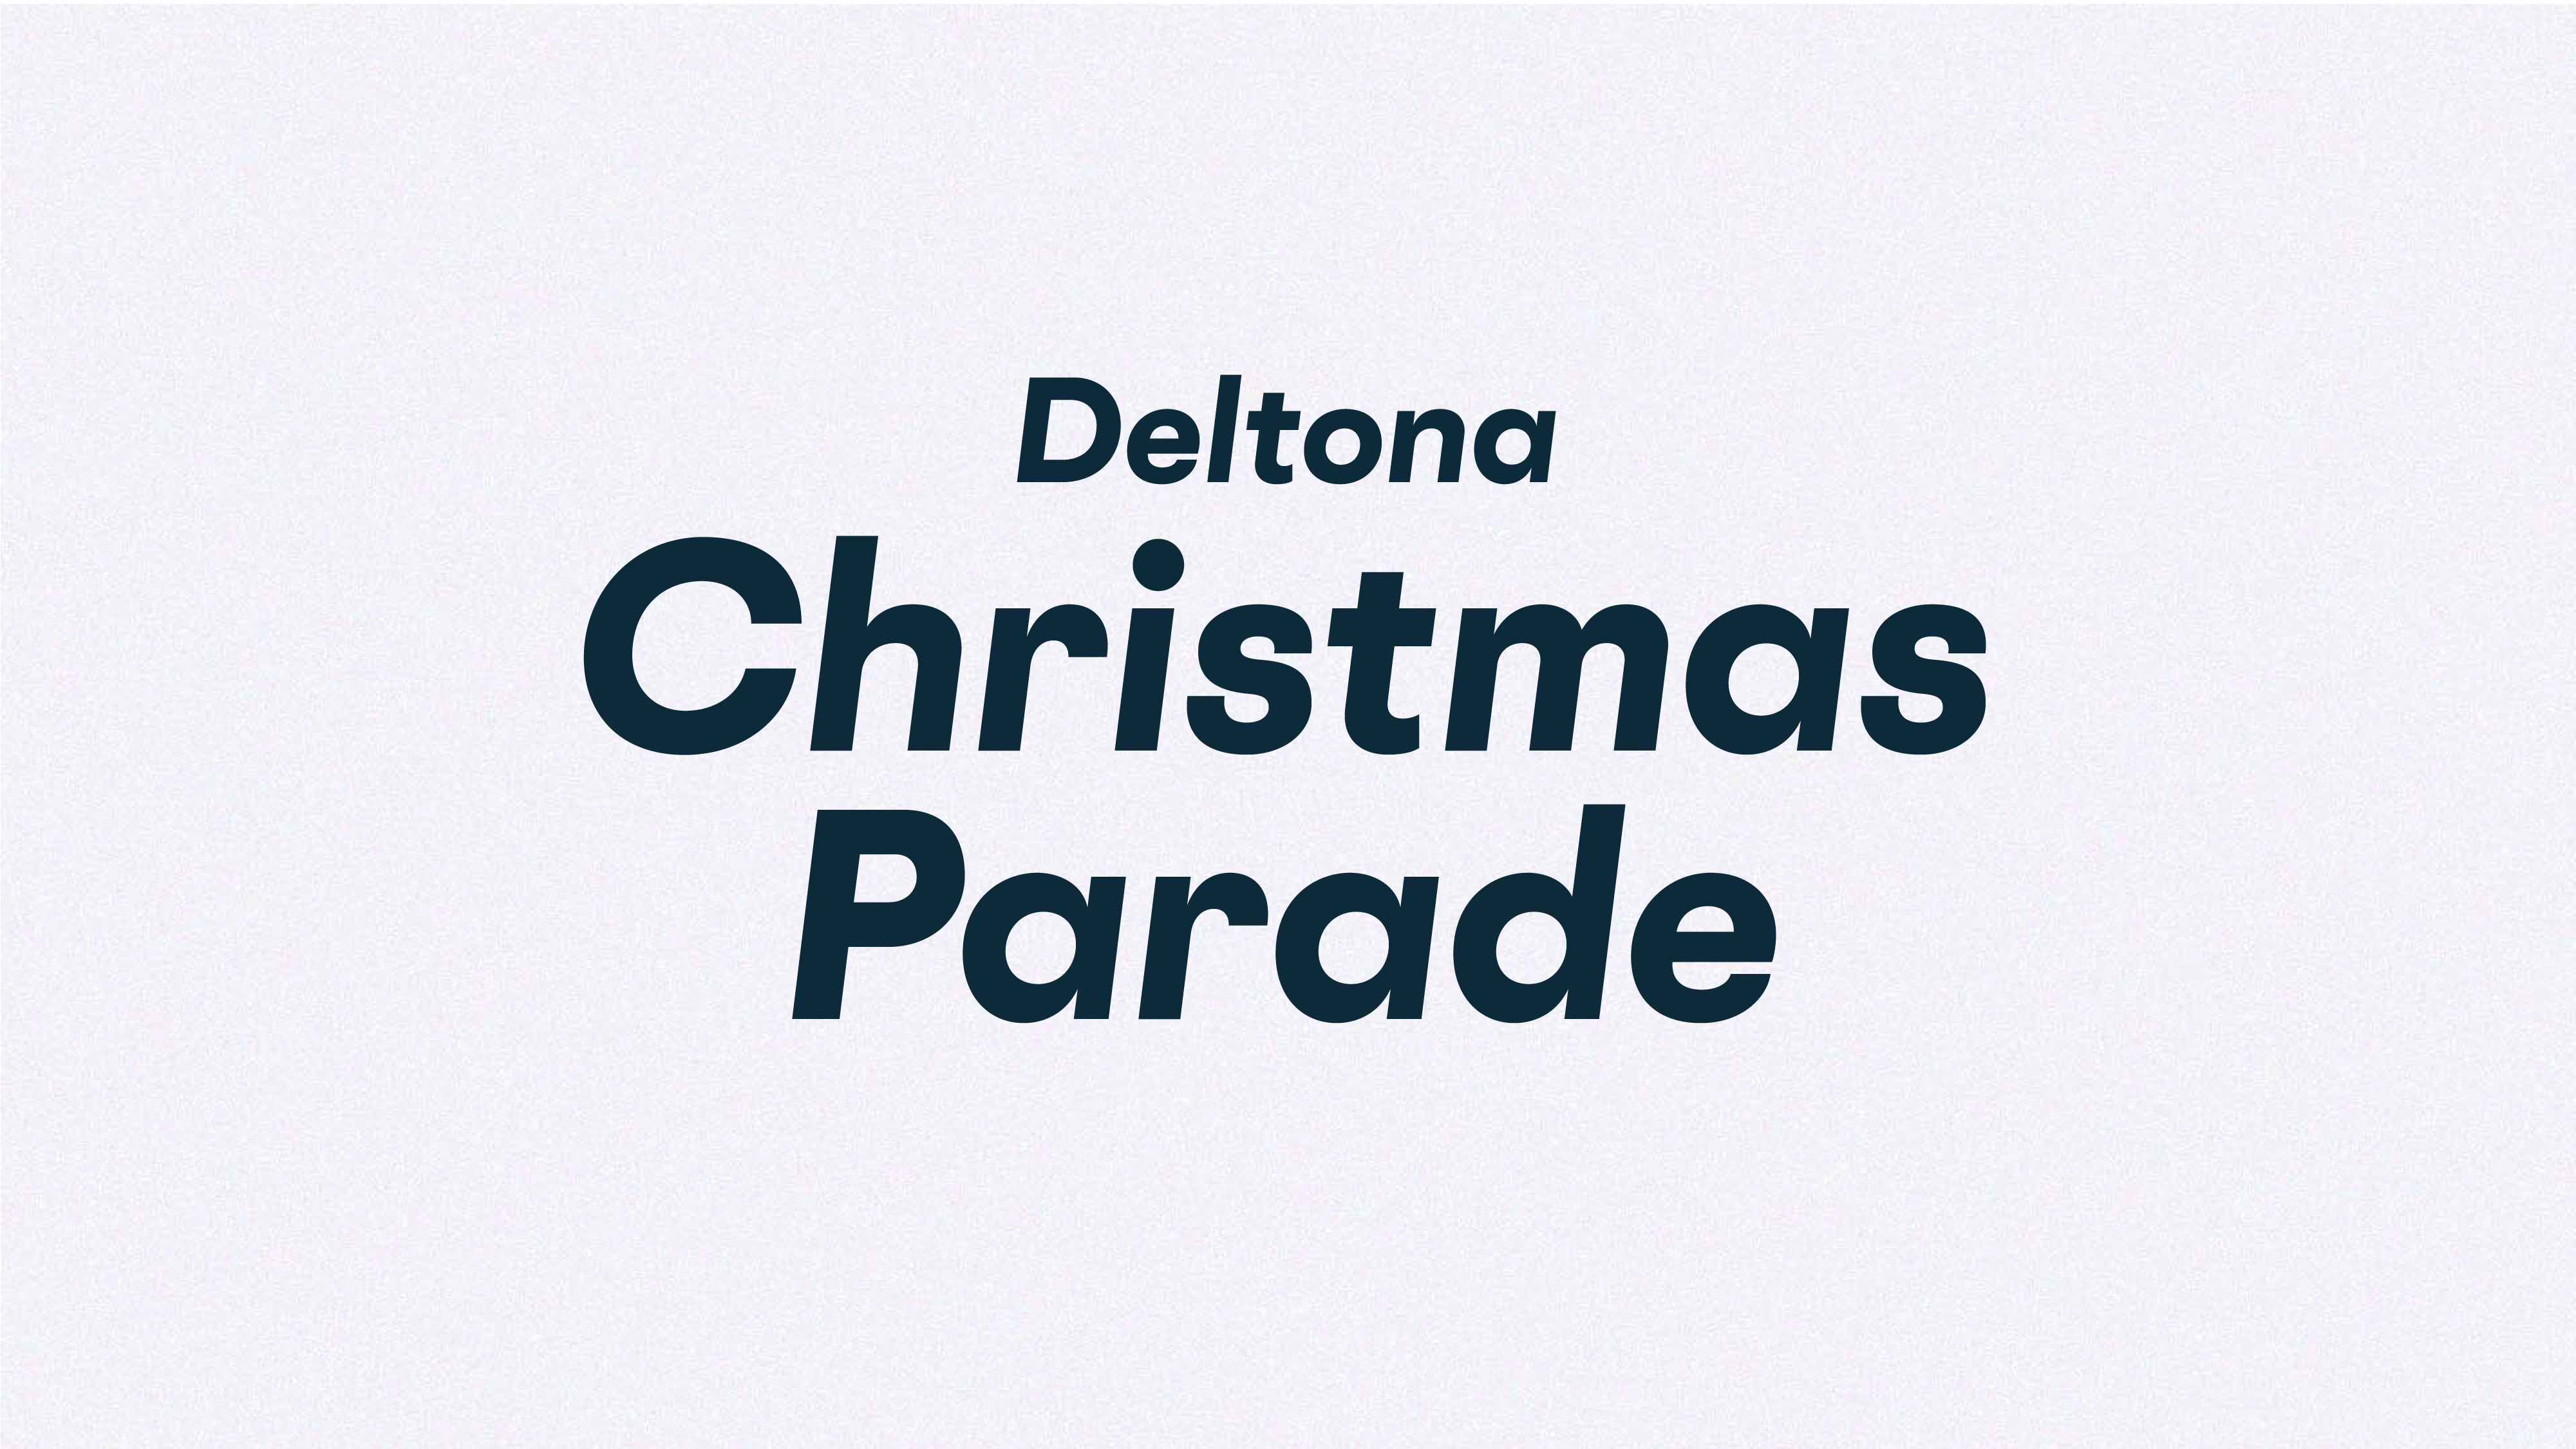 Deltona Christmas Parade